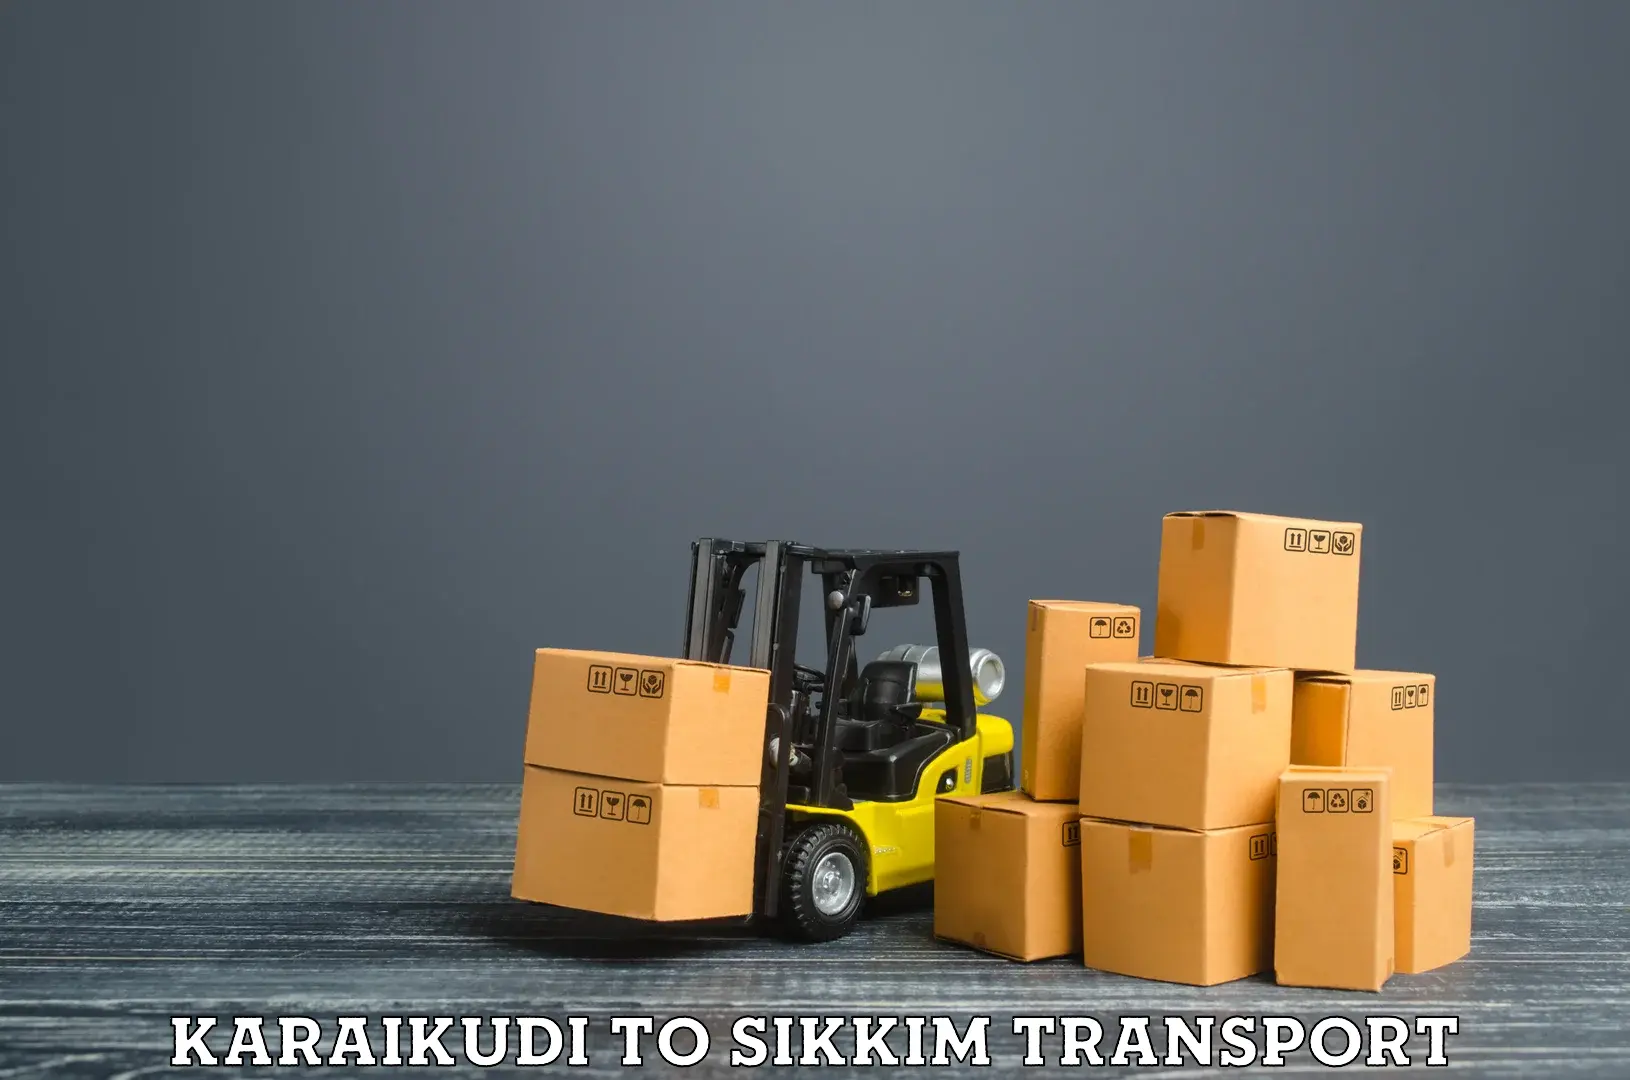 Express transport services Karaikudi to Sikkim